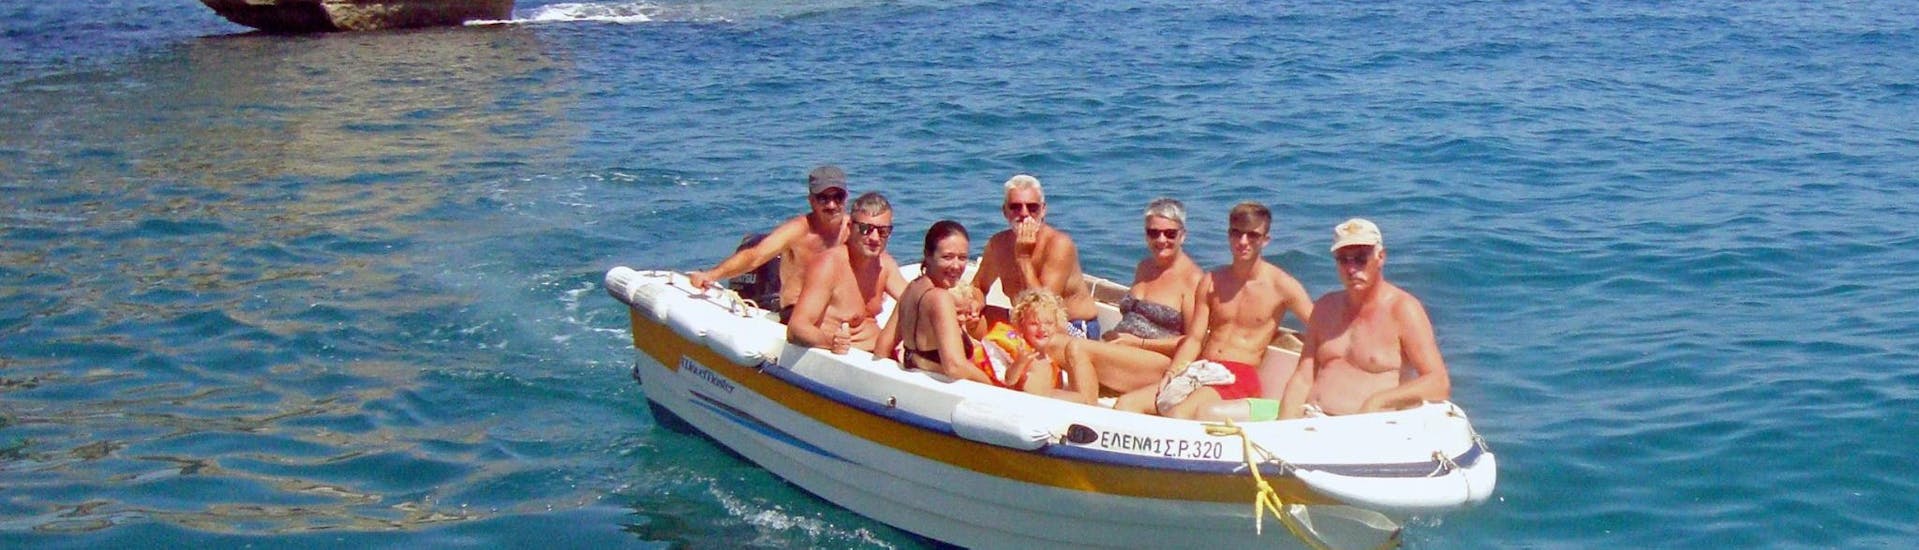 Un gruppo di amici si rilassa durante il Noleggio barche a Bali (fino a 6 persone) senza patente con The Skippers - Boats & Water Sports Bali.